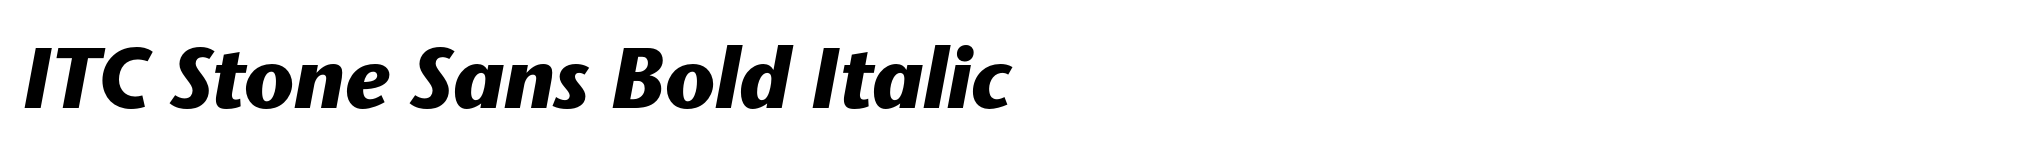 ITC Stone Sans Bold Italic image